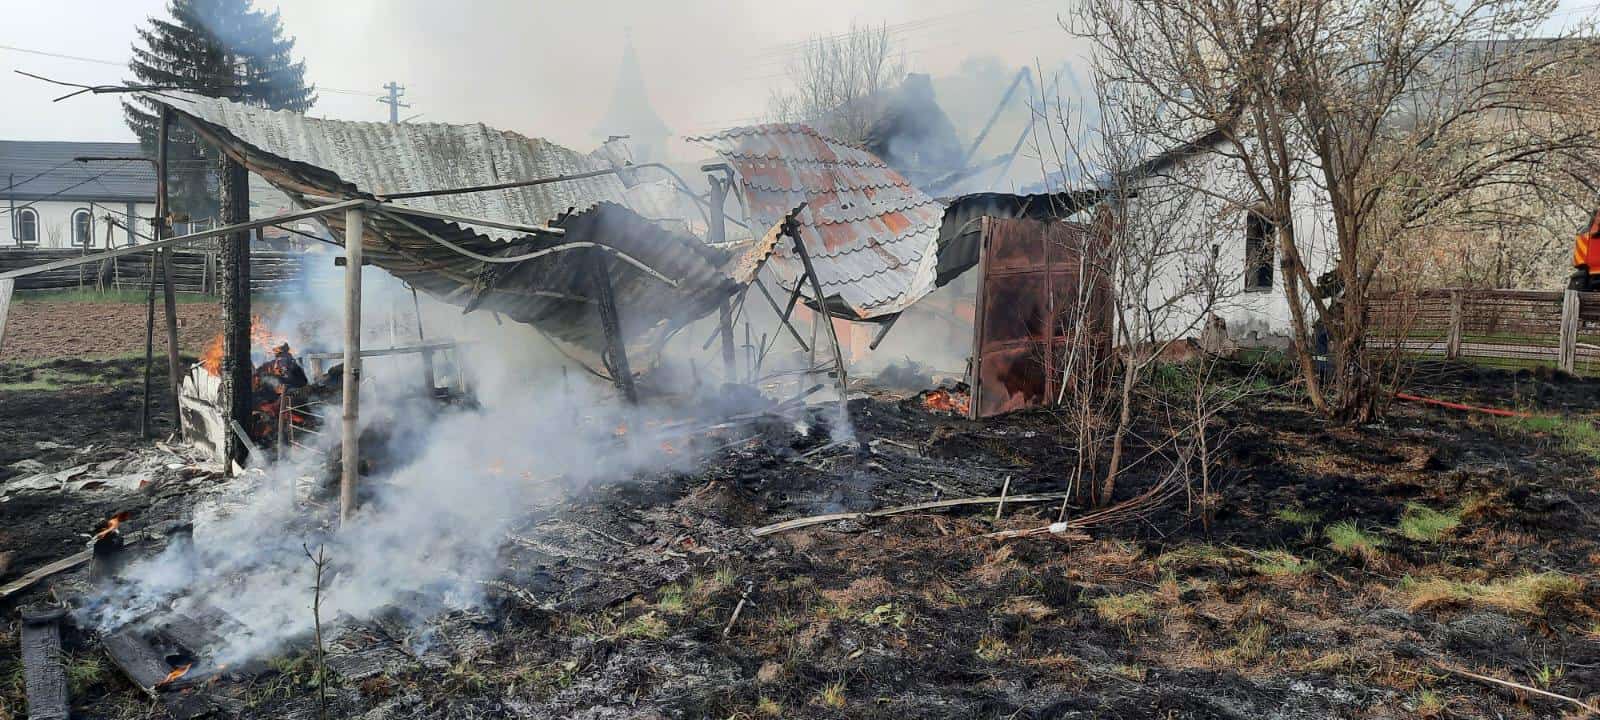 casă mistuită de flăcări în vecerd în urma unui incendiu de vegetație